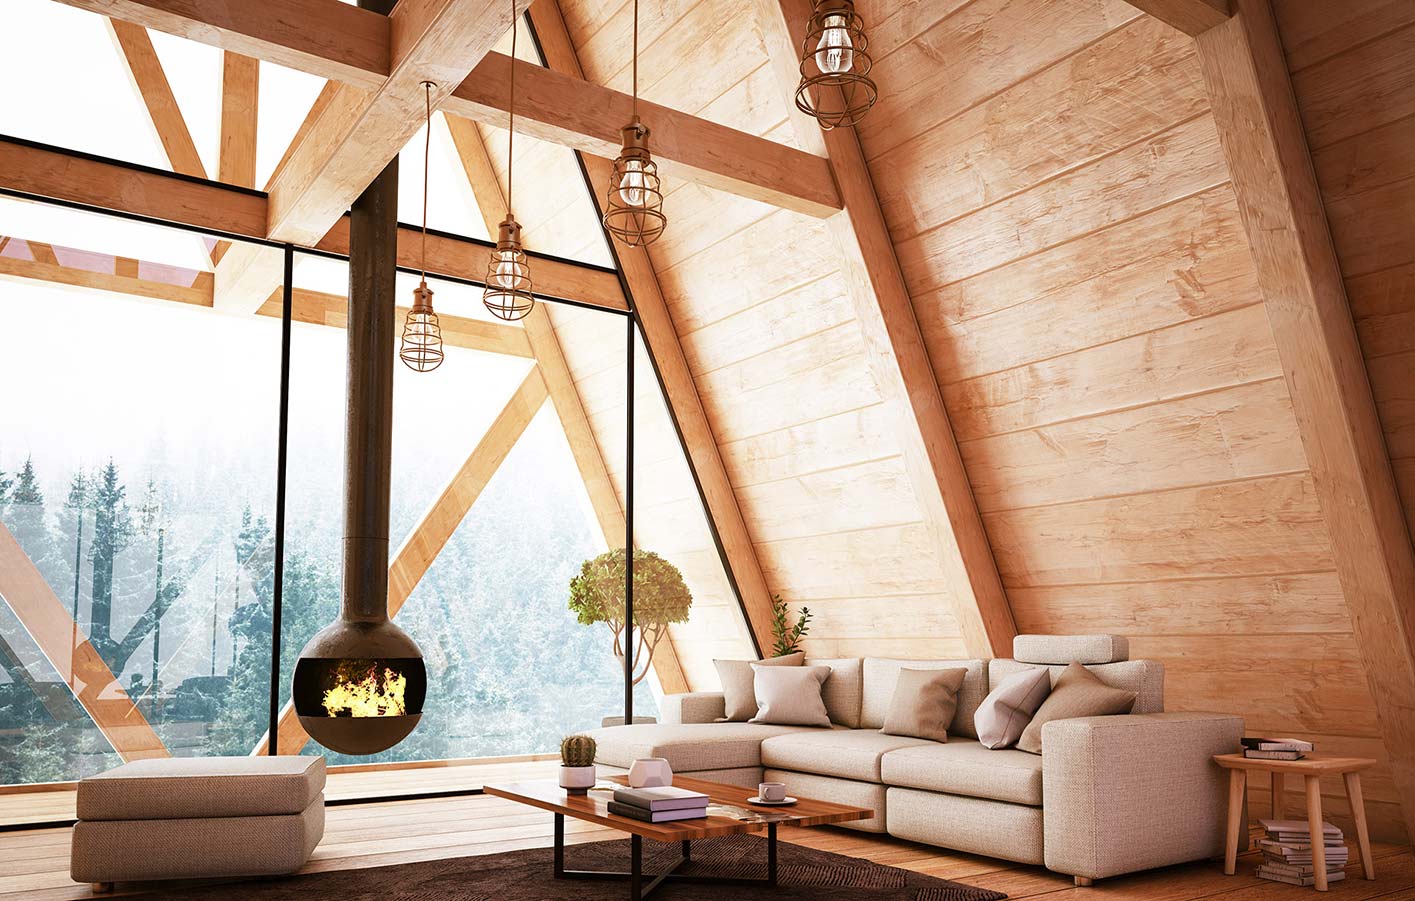 Holzdecke mit Holzbalken - modernes Loftdachgeschoss